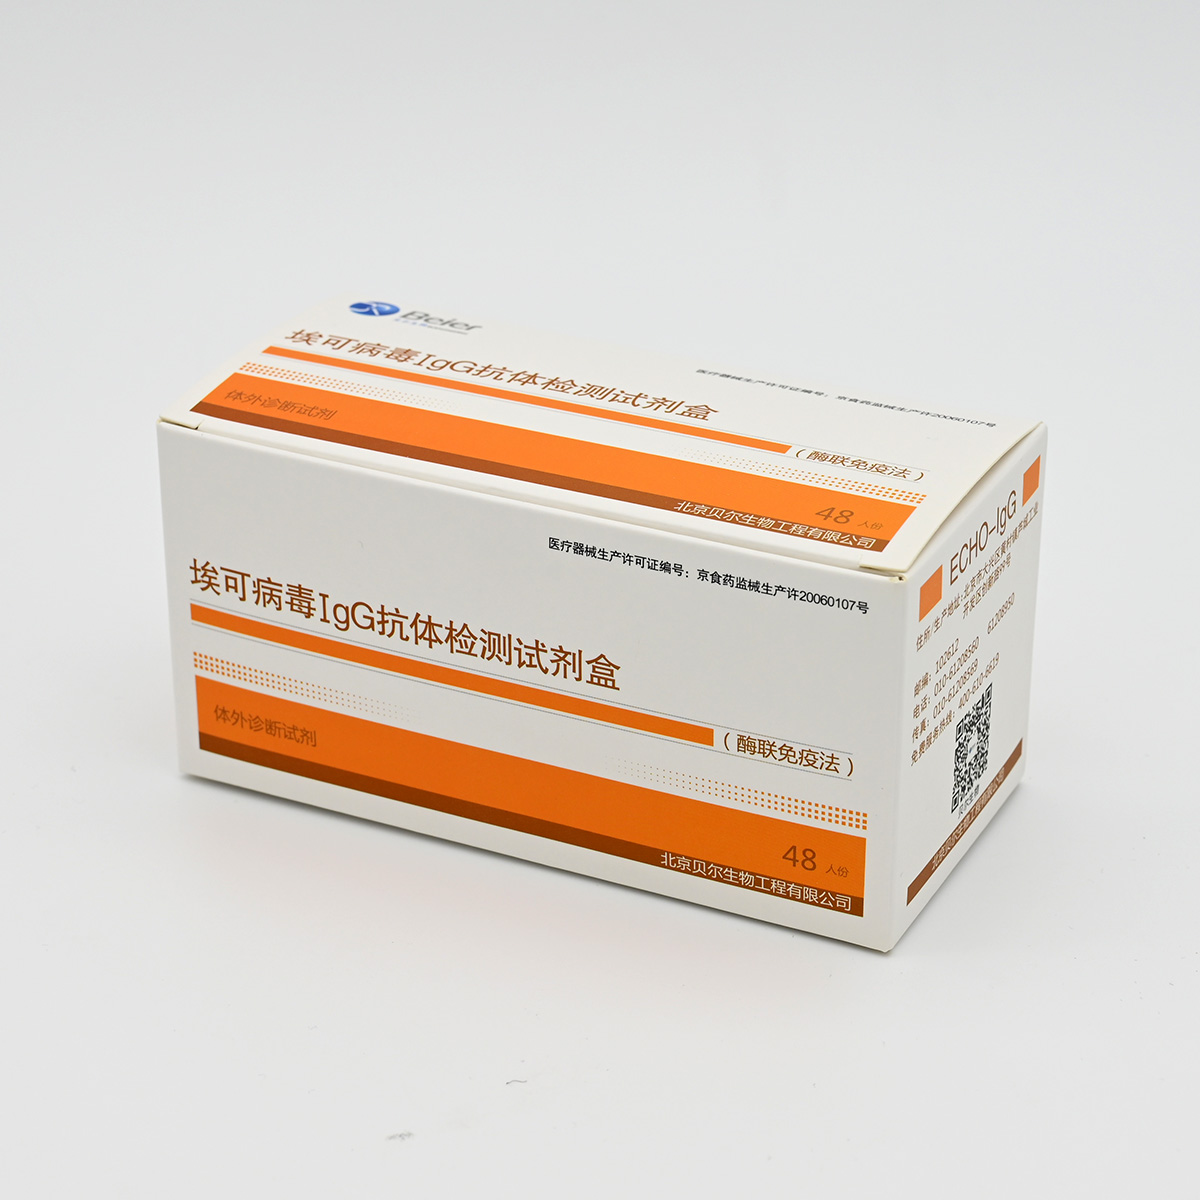 【贝尔】埃可病毒IgG抗体检测试剂盒(酶联免疫法)